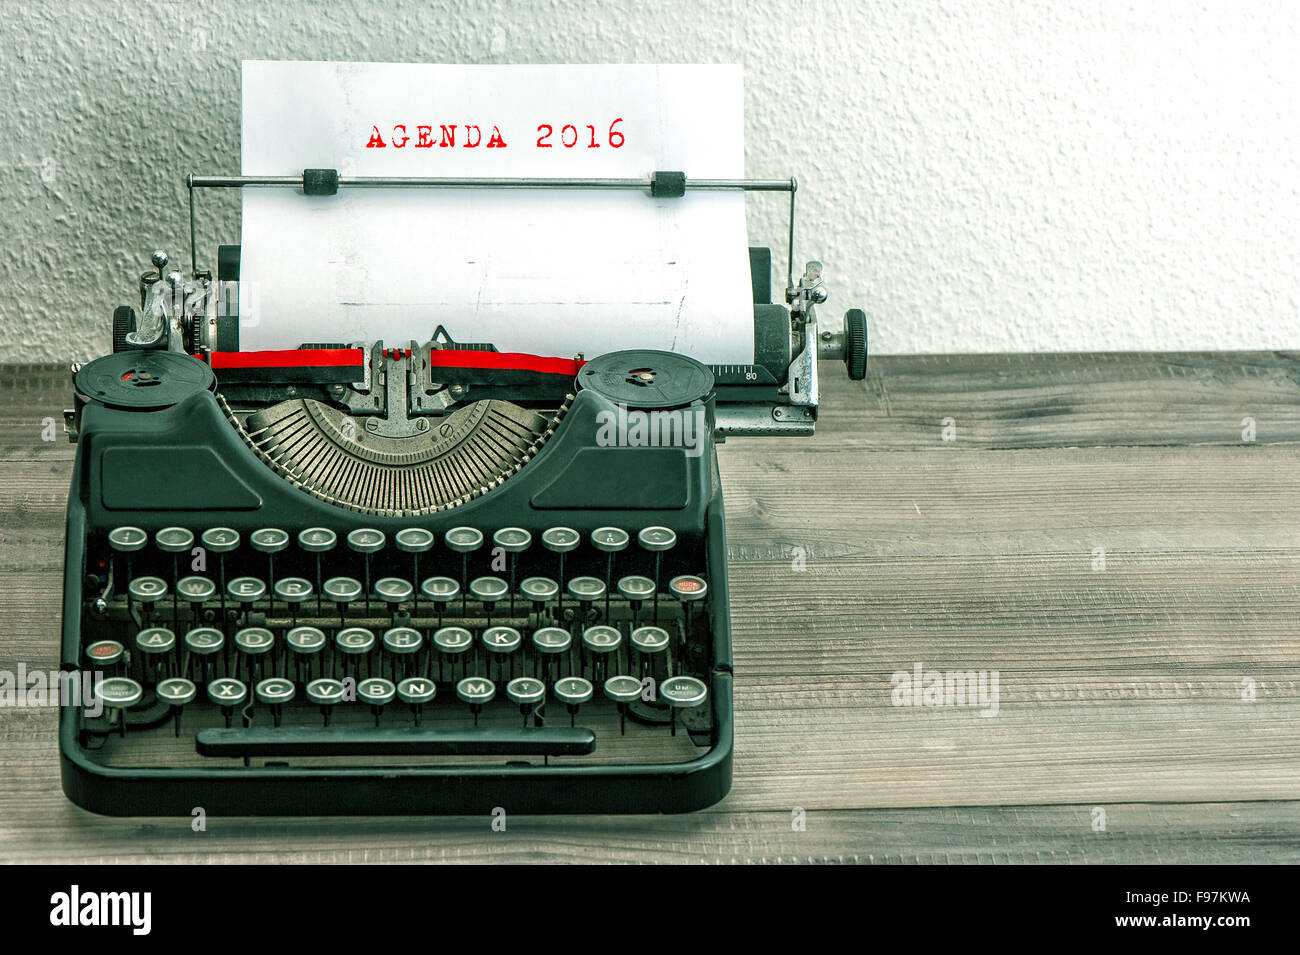 Schreibmaschine mit weißem Papierseite auf Schreibtisch aus Holz. Business-Konzept. Beispieltext für die AGENDA 2016. Vintage-Stil Bild Stockfoto